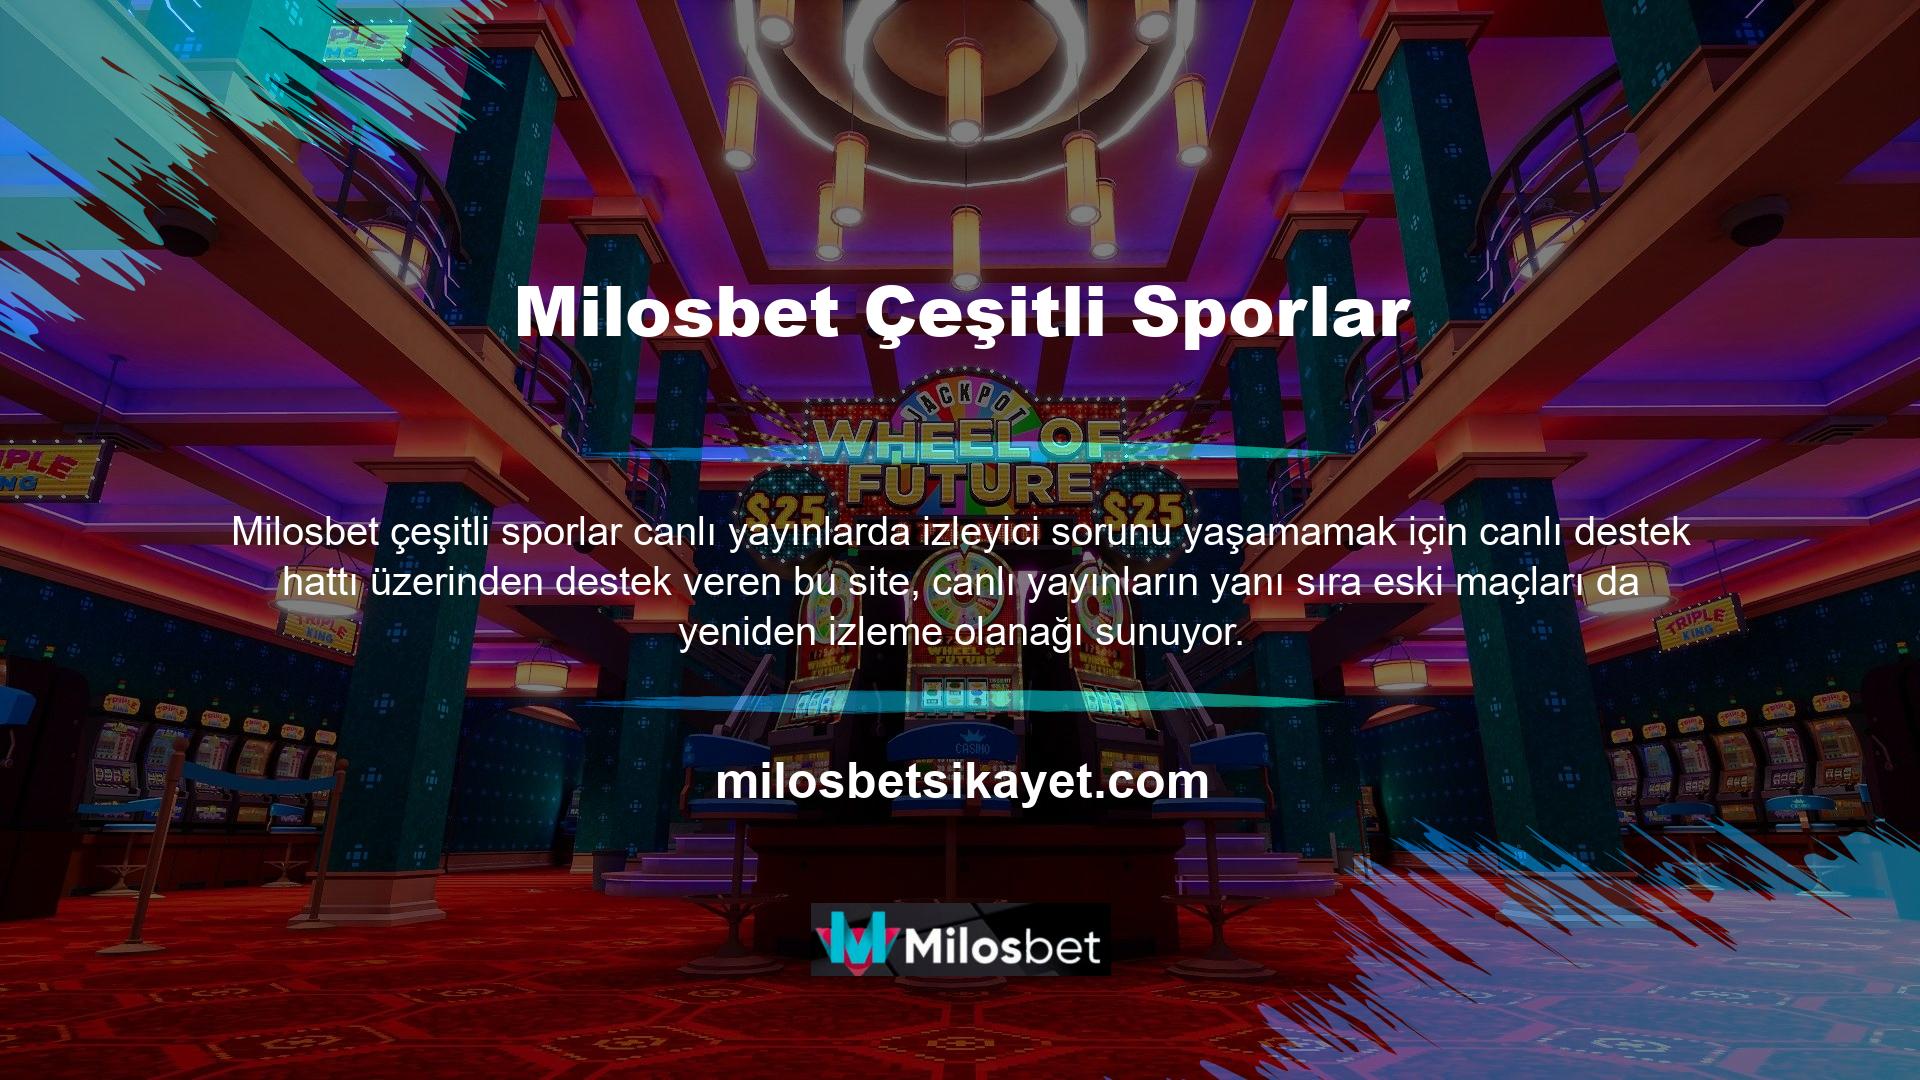 Milosbet TV kanalında Milosbet canlı maç izleme seçeneğinden yararlanan izleyici sayısı ciddi oranda arttı